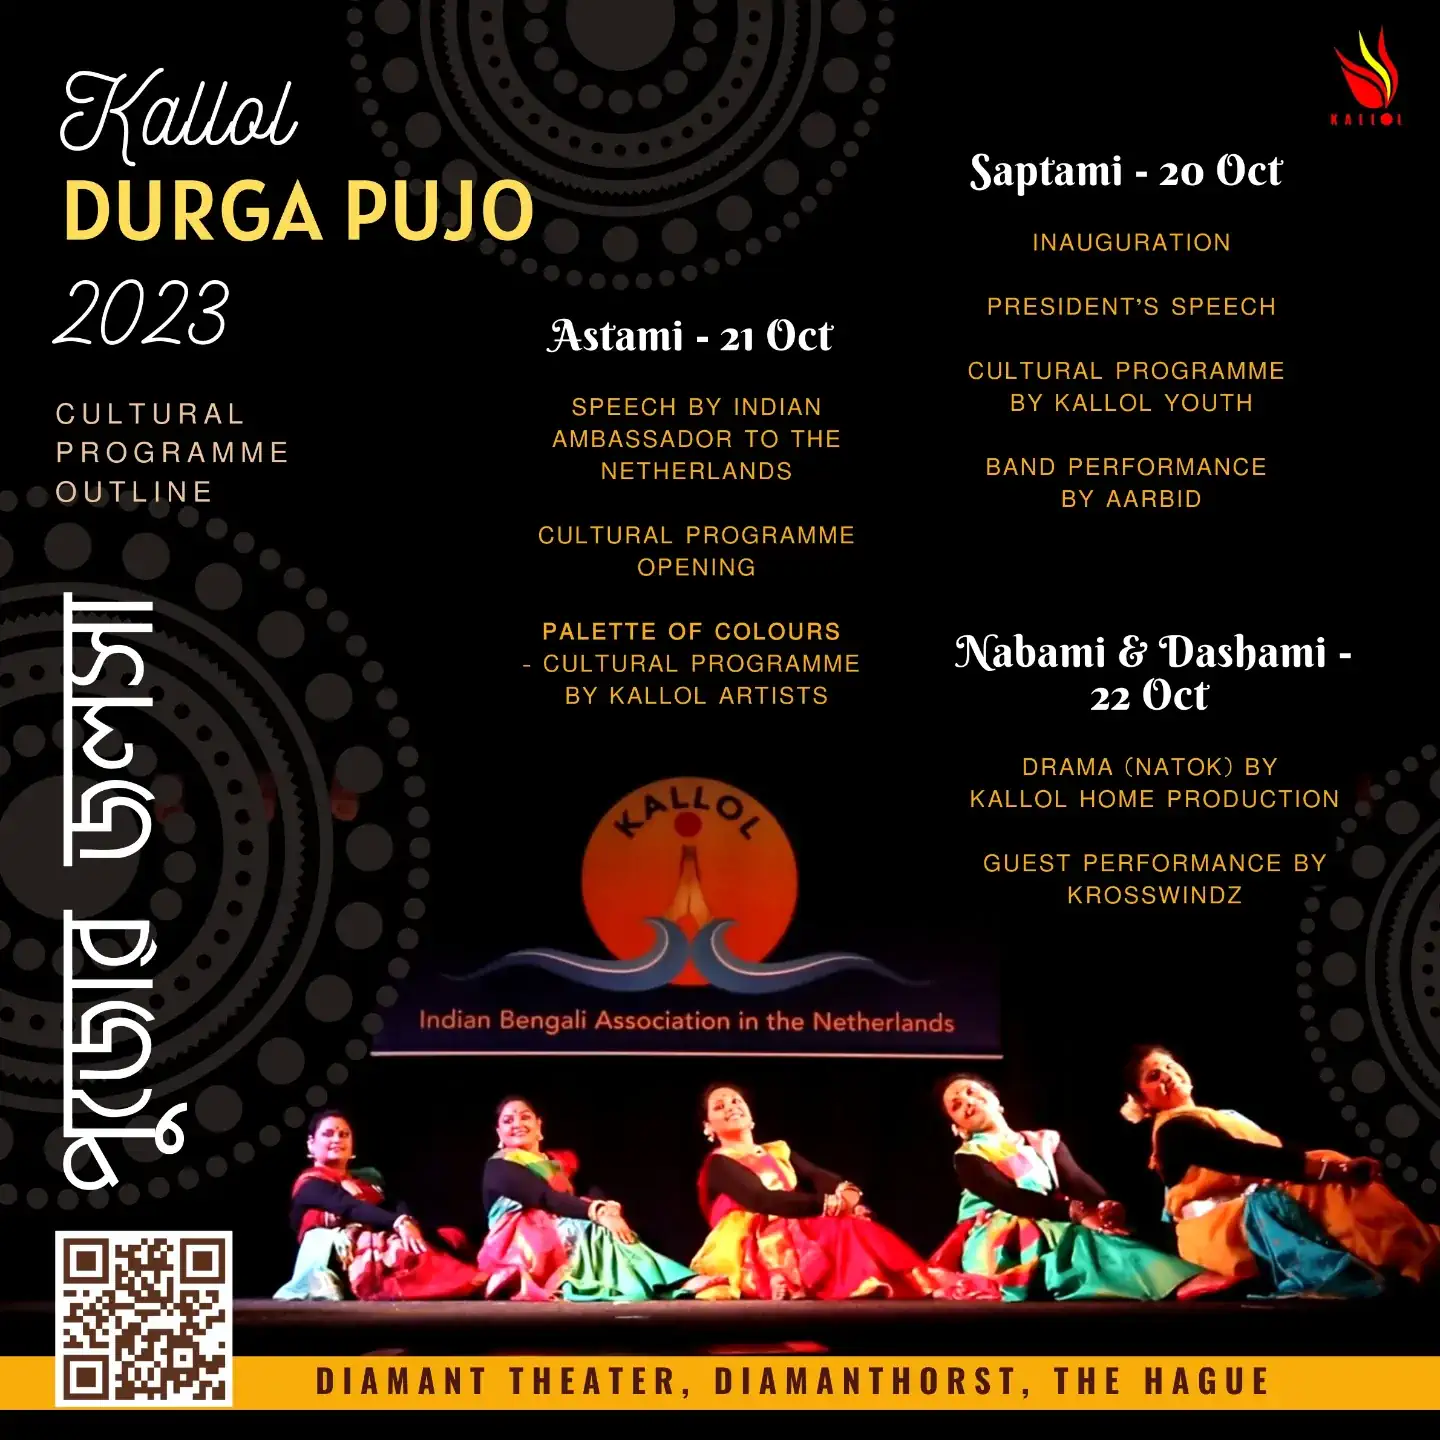 Kallol Durga Pujo 2023 Programme Outline